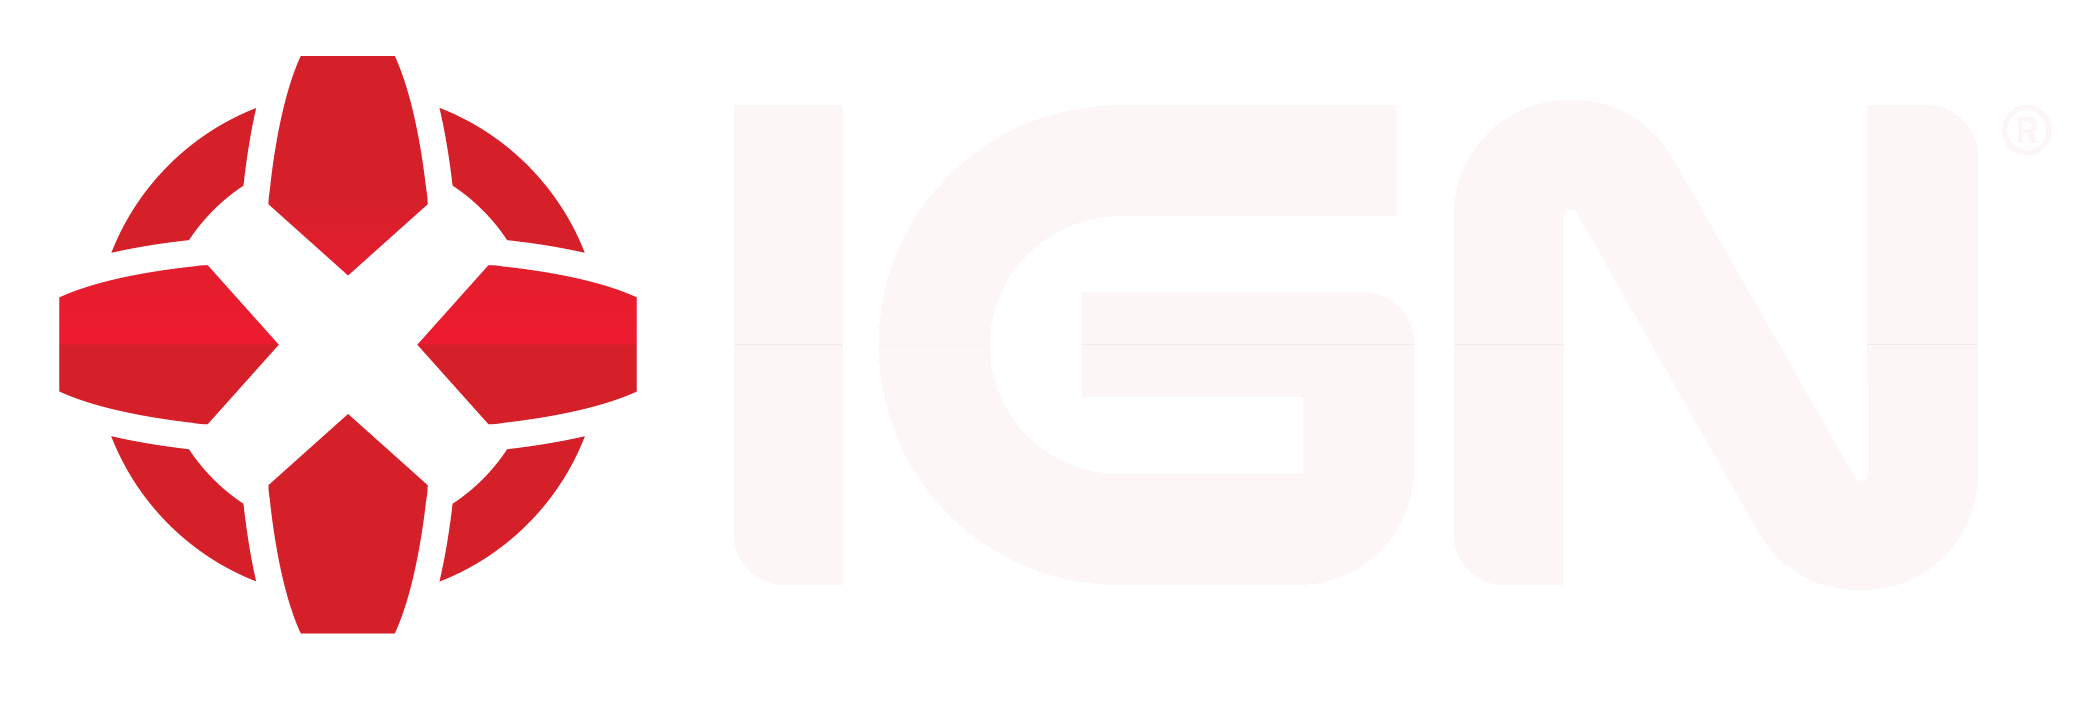 IGN Logo - Ign Logo White.com. IRacing.com Motorsport Simulations